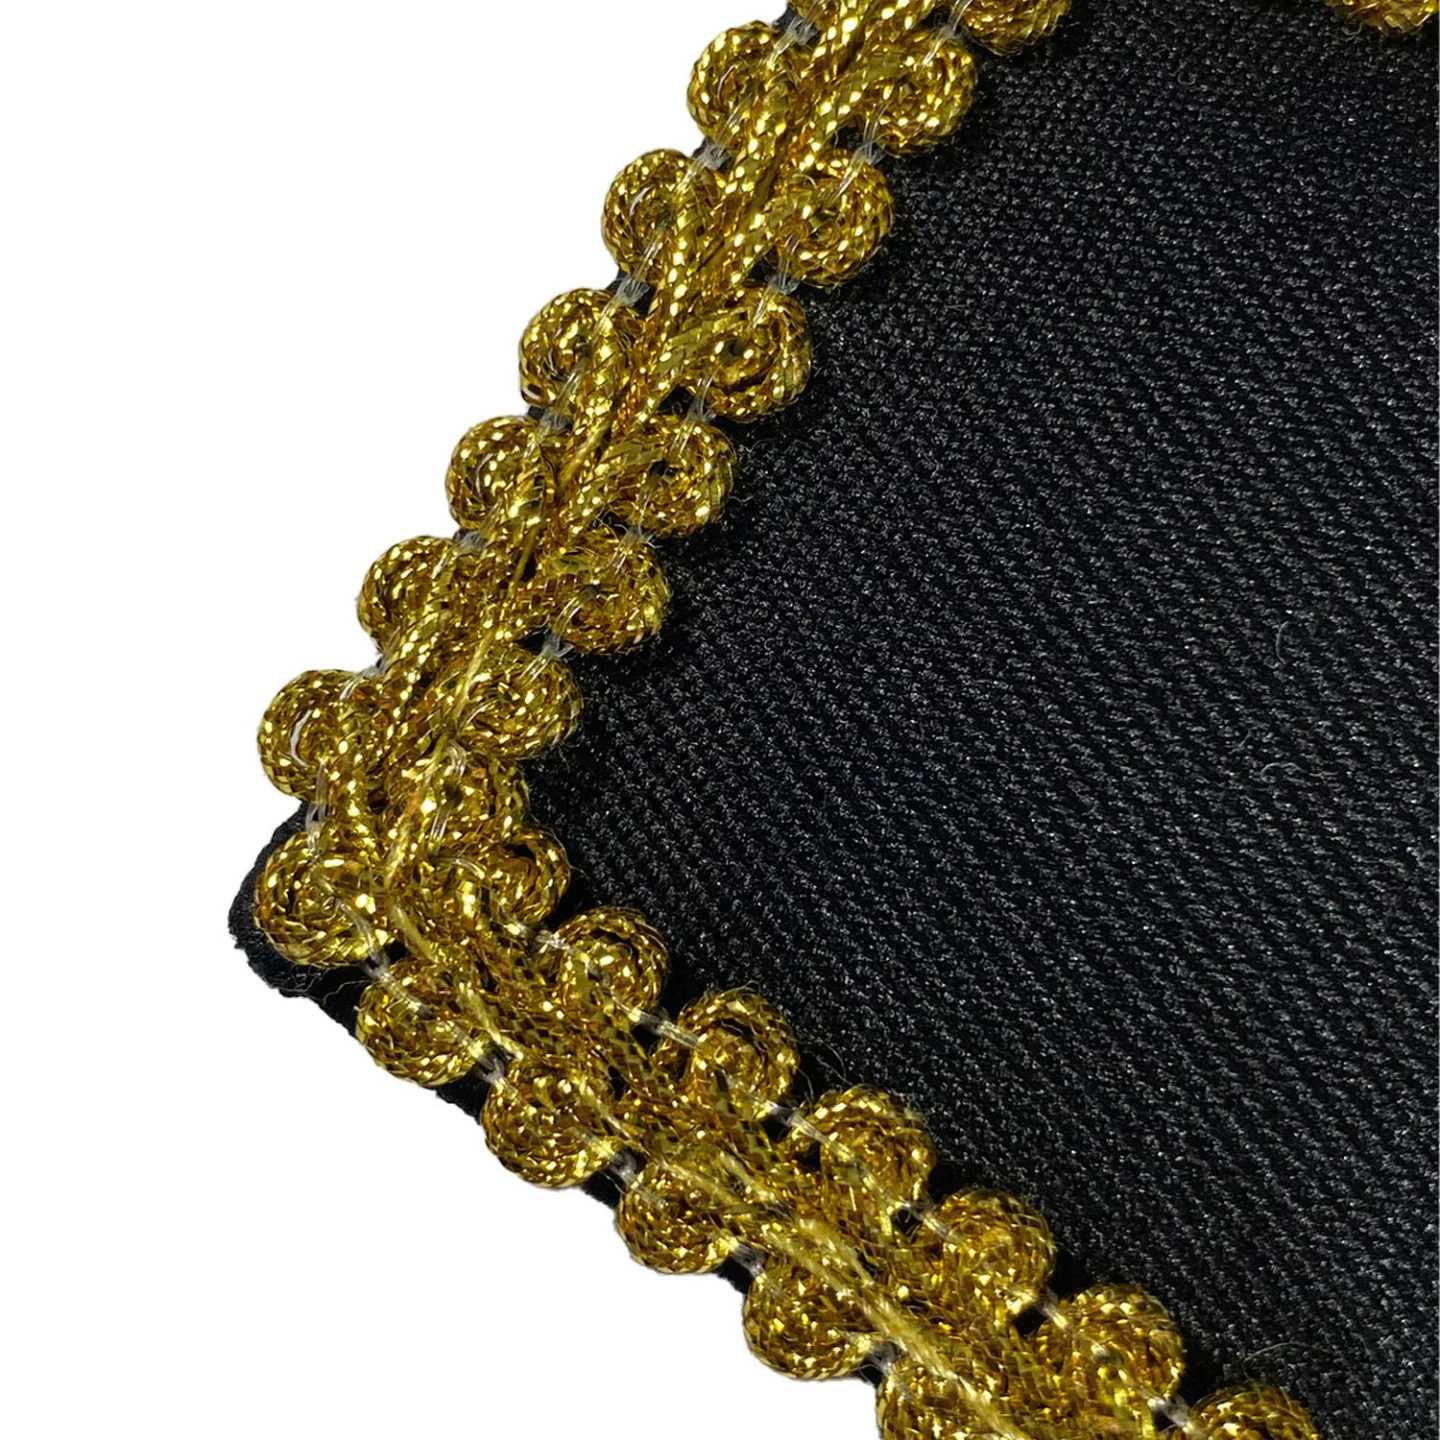 Epauletten goud met zwarte details bestellen.